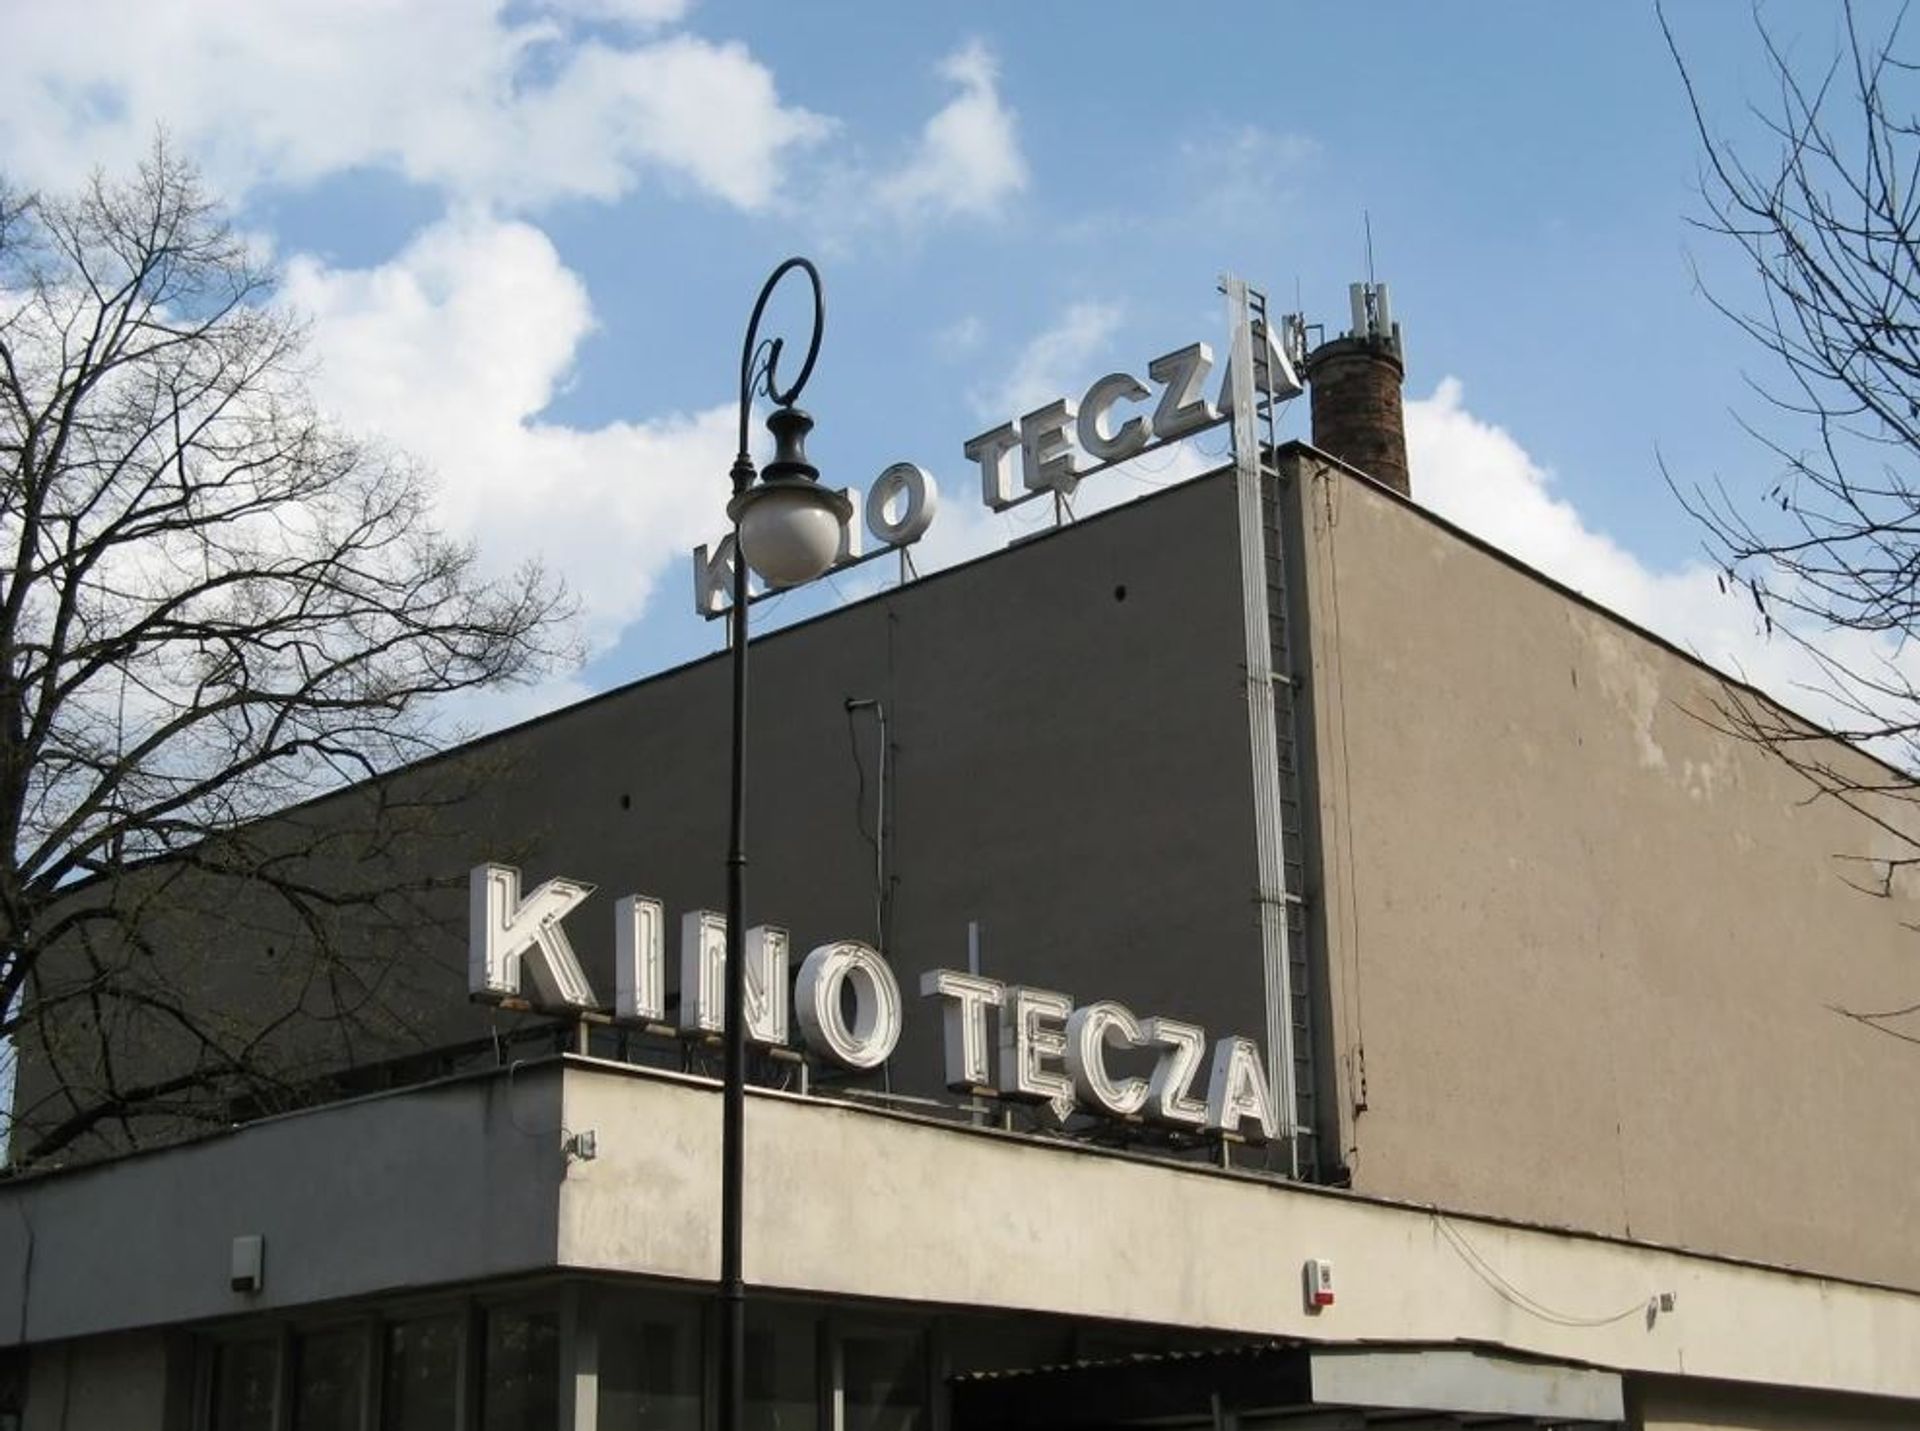 Przedwojenne kino Tęcza przy ul. Suzina 6 w Warszawie zostanie ponownie częściowo otwarte